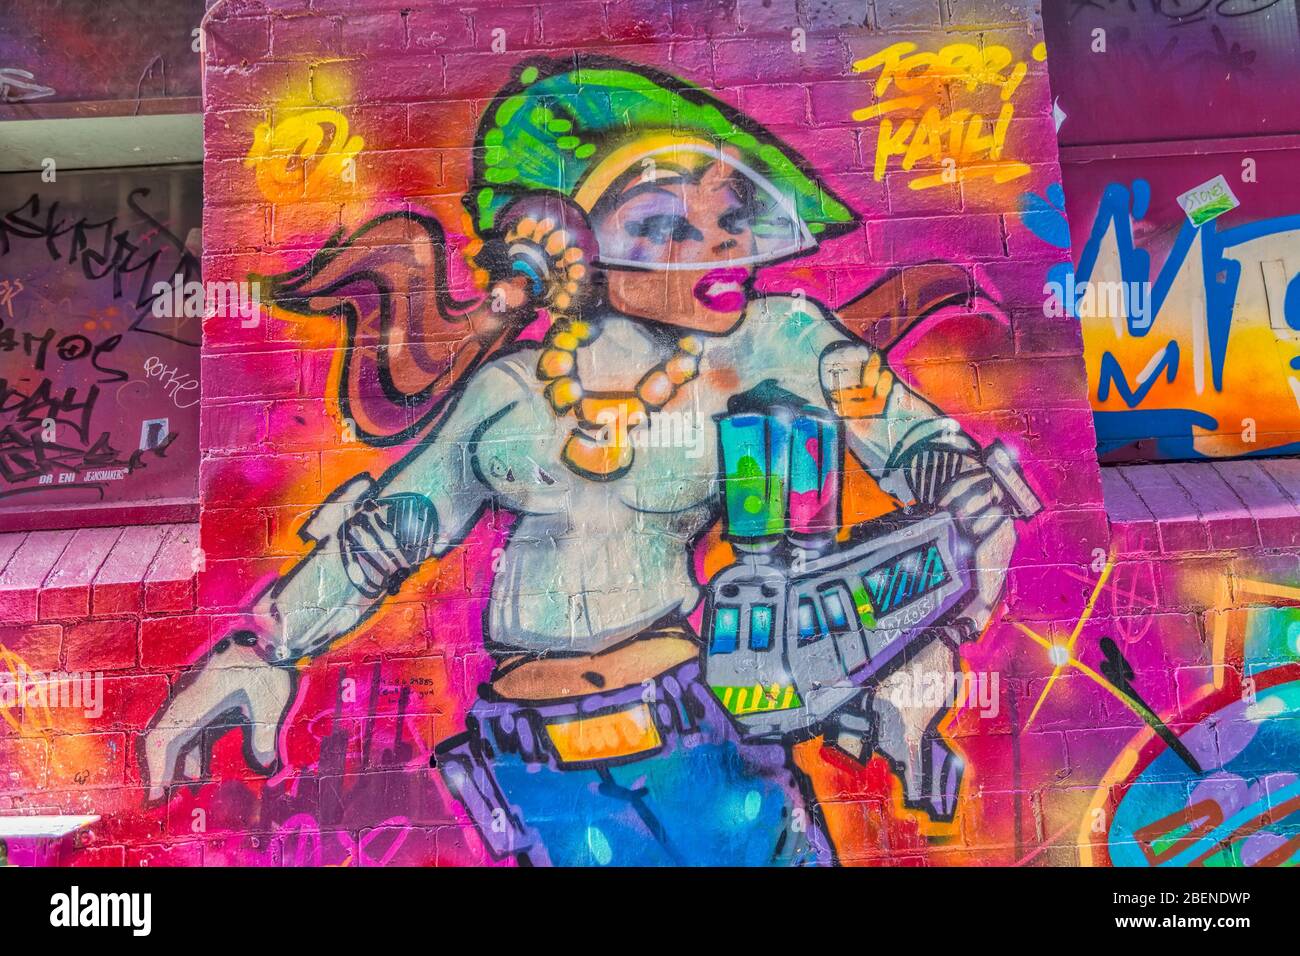 Melbourne graffiti train femme Banque D'Images